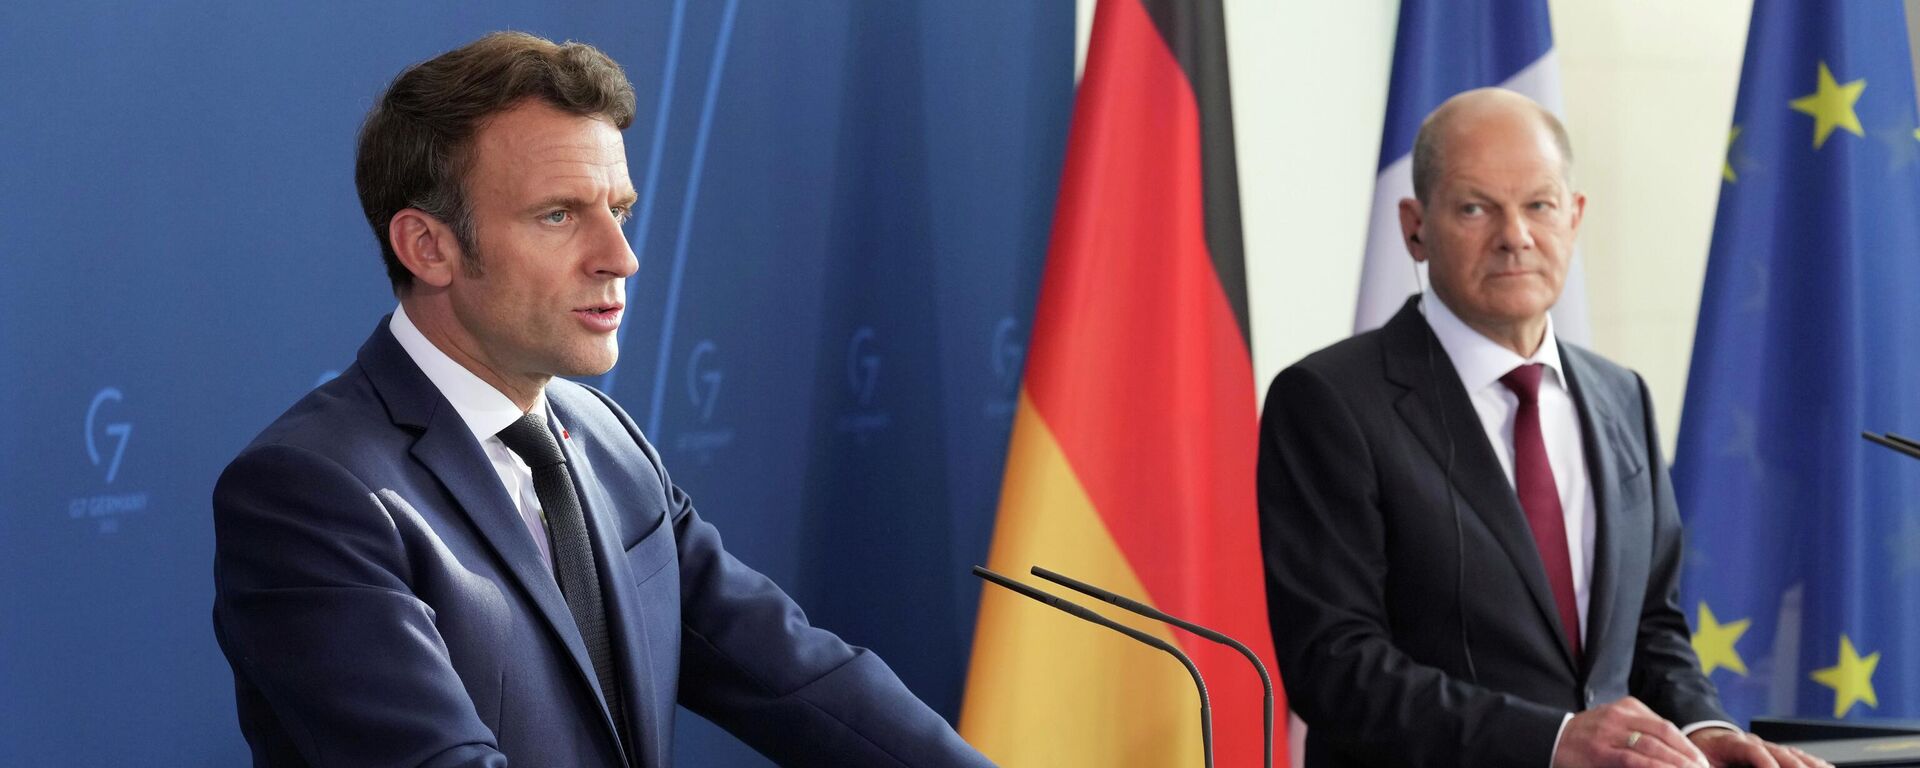 O presidente francês, Emmanuel Macron (à esquerda), fala durante coletiva de imprensa ao lado do chanceler alemão, Olaf Scholz, em Berlim, na Alemanha, em 9 de maio de 2022 (foto de arquivo) - Sputnik Brasil, 1920, 29.07.2022